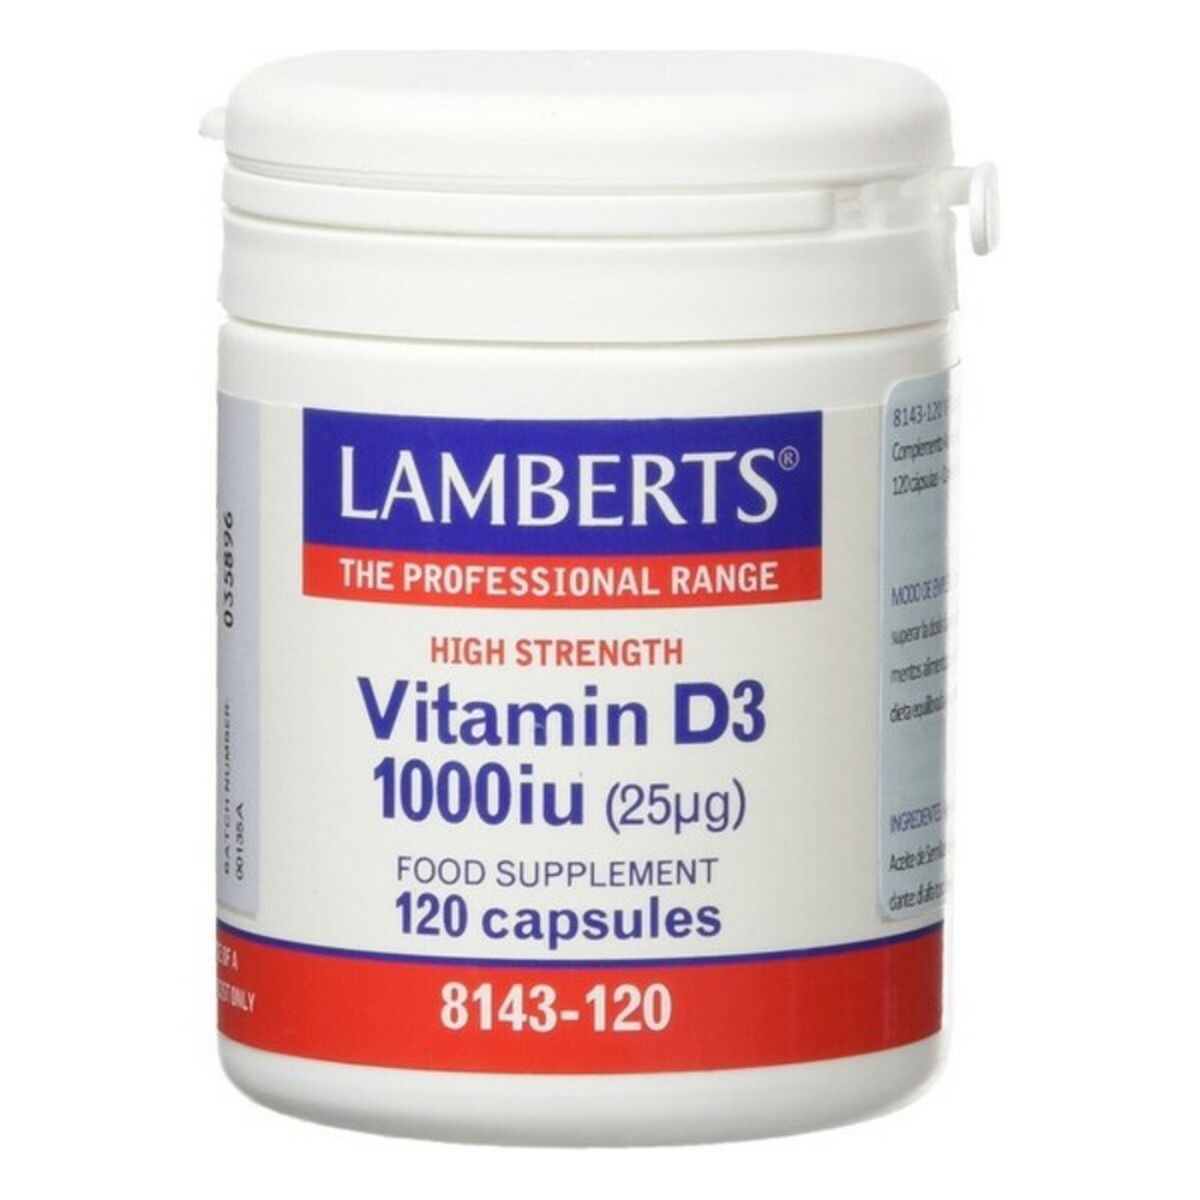 Capsules Lamberts 5055148409623 Vitamine D3 120 Unités (120 uds)